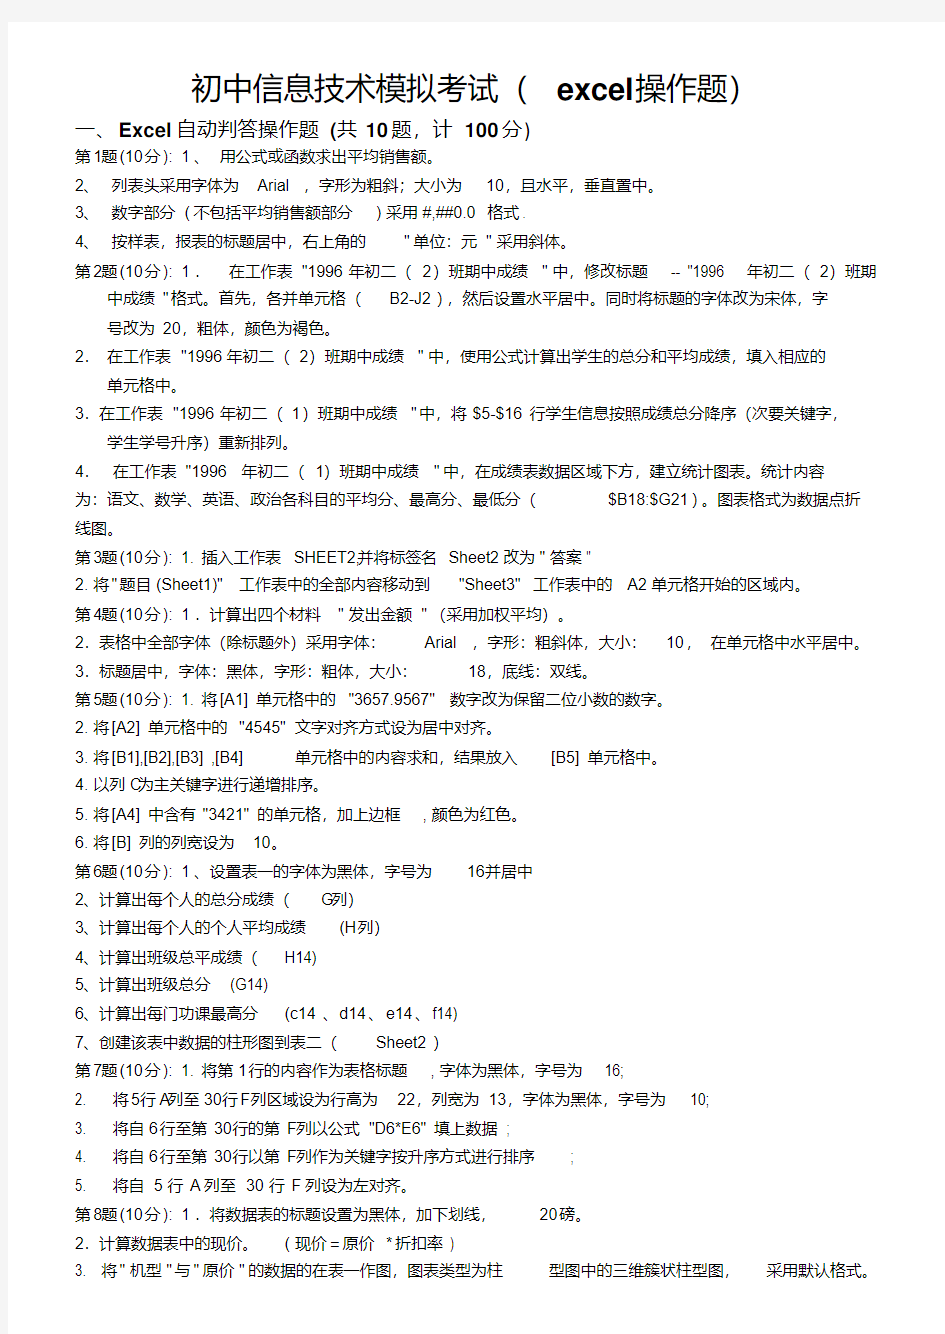 初中信息技术模拟考试(操作题)(1).pdf